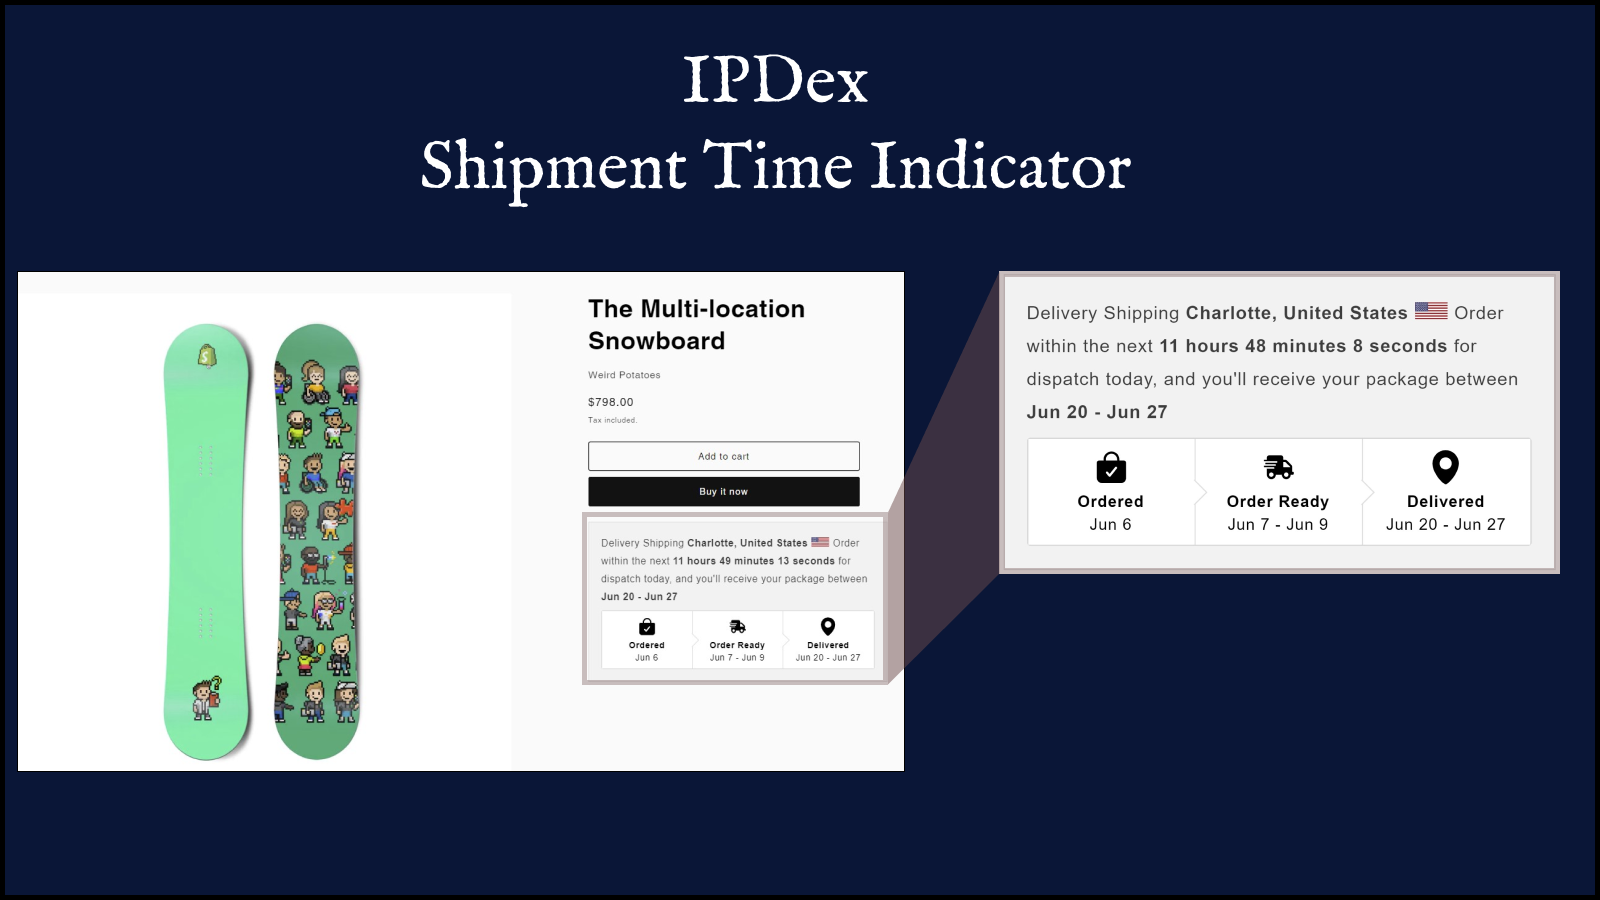 Funcionalidade essencial do IPDex exibida